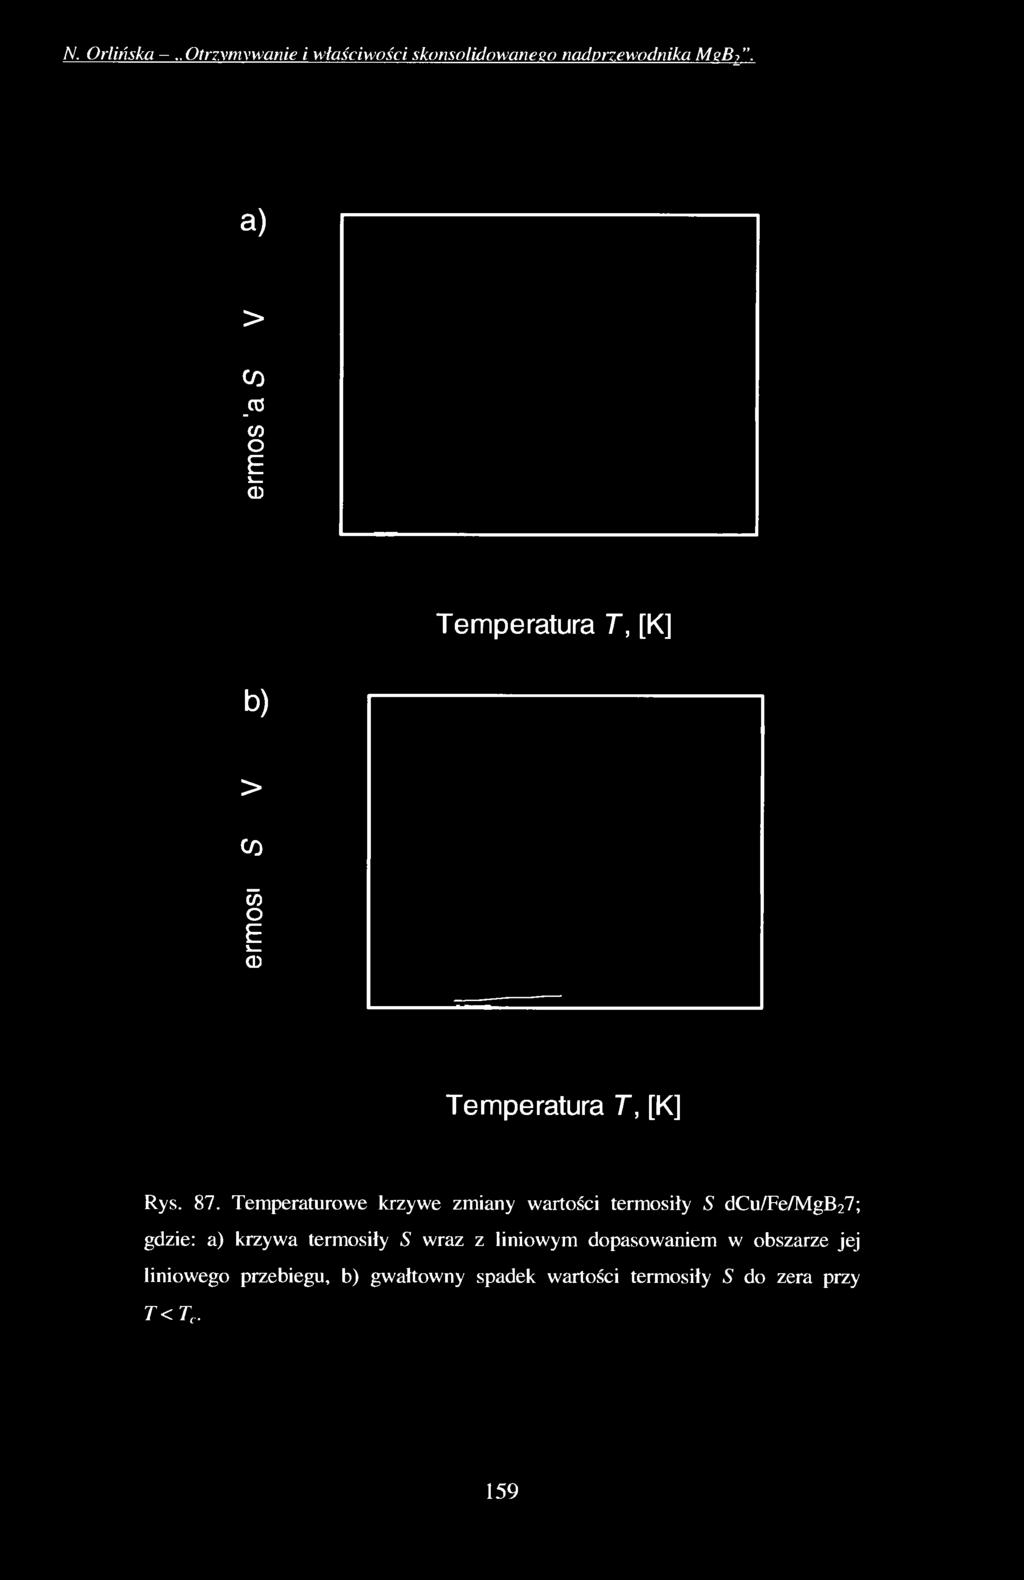 Temperaturowe krzywe zmiany wartości termosiły S dcu/fe/mgb27; gdzie: a) krzywa termosiły S wraz